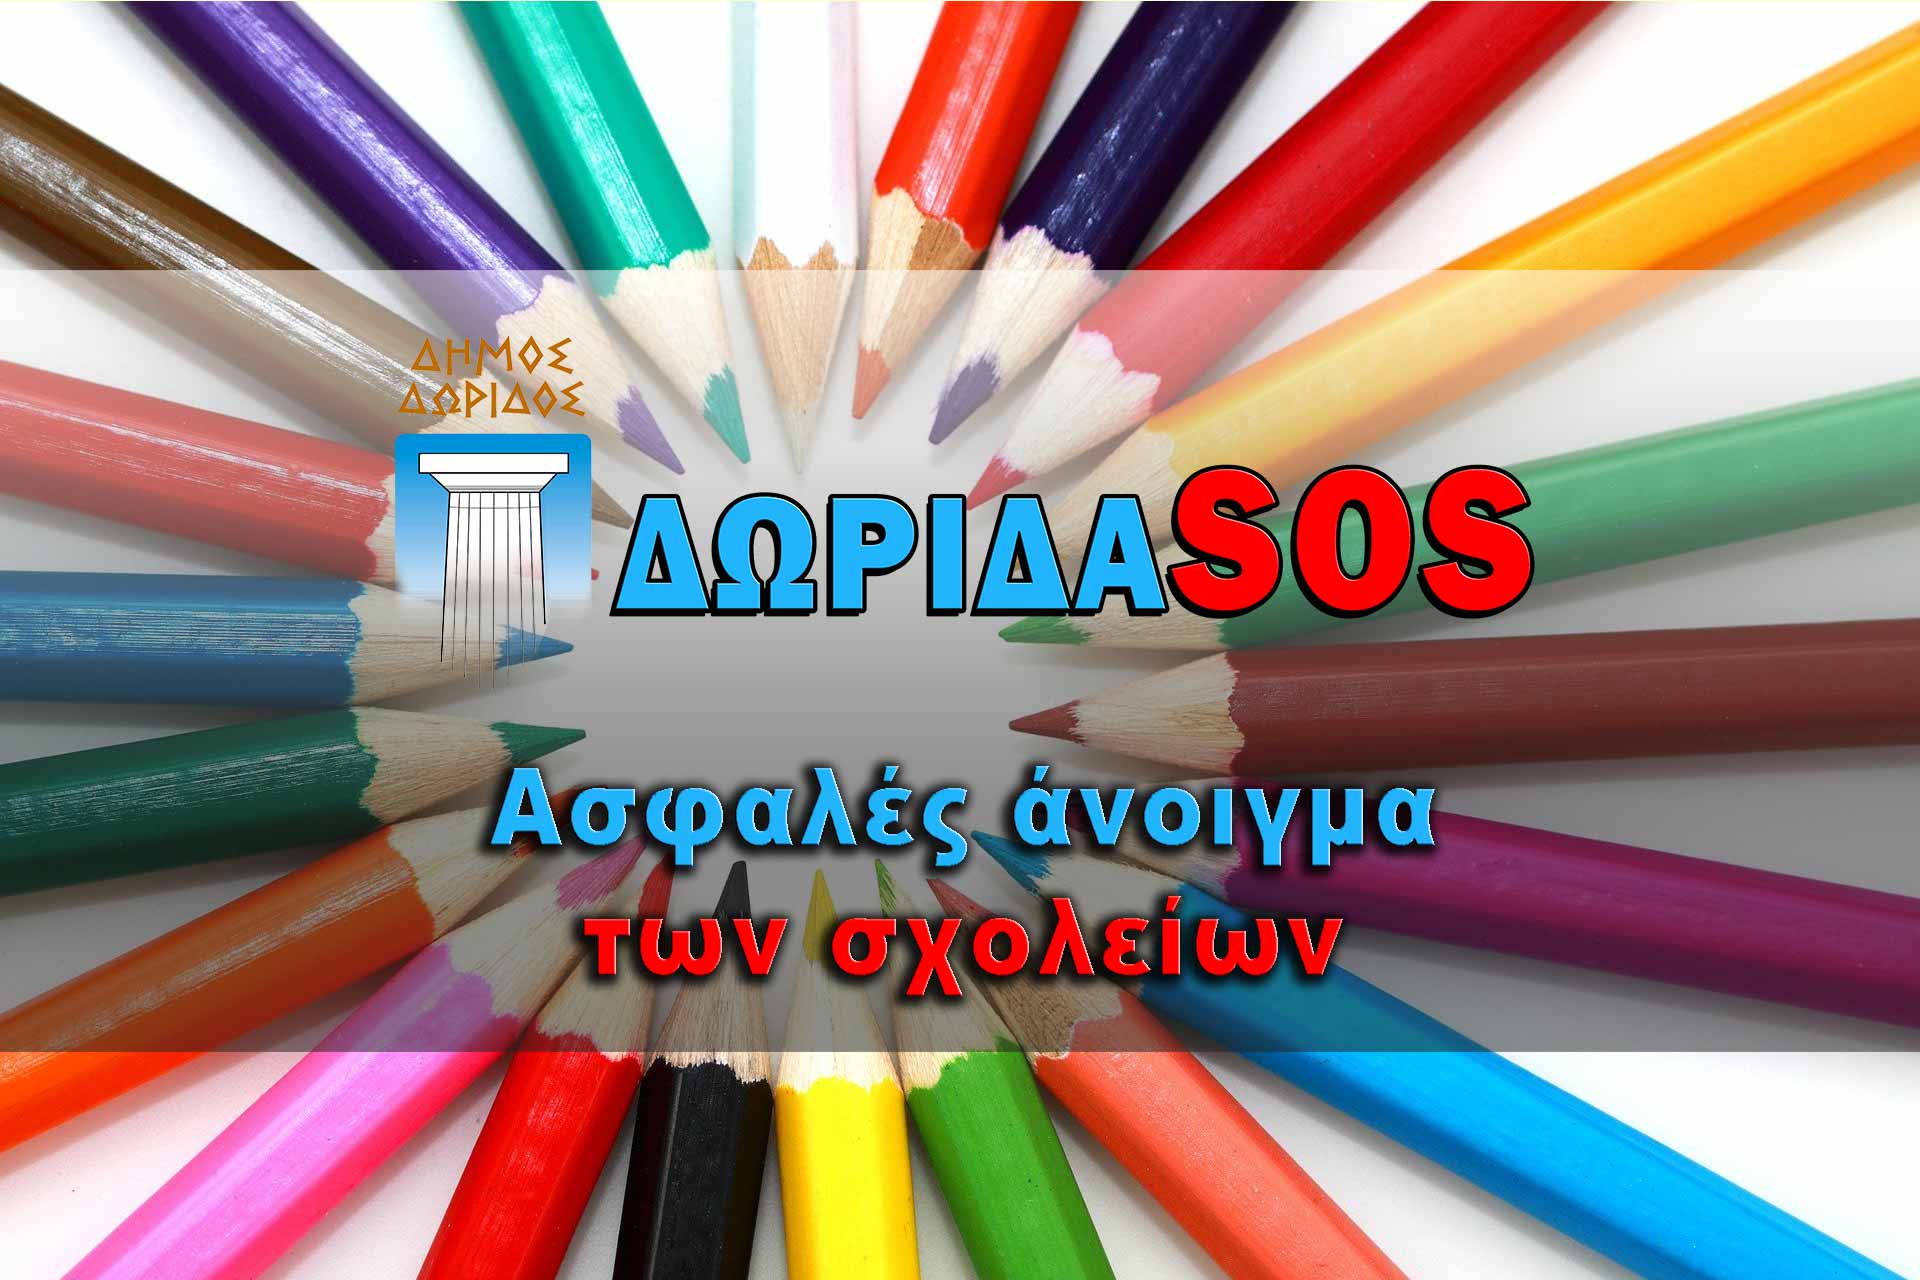 Dorida-SOS ασφαλές άνοιγμα όλων των σχολείων